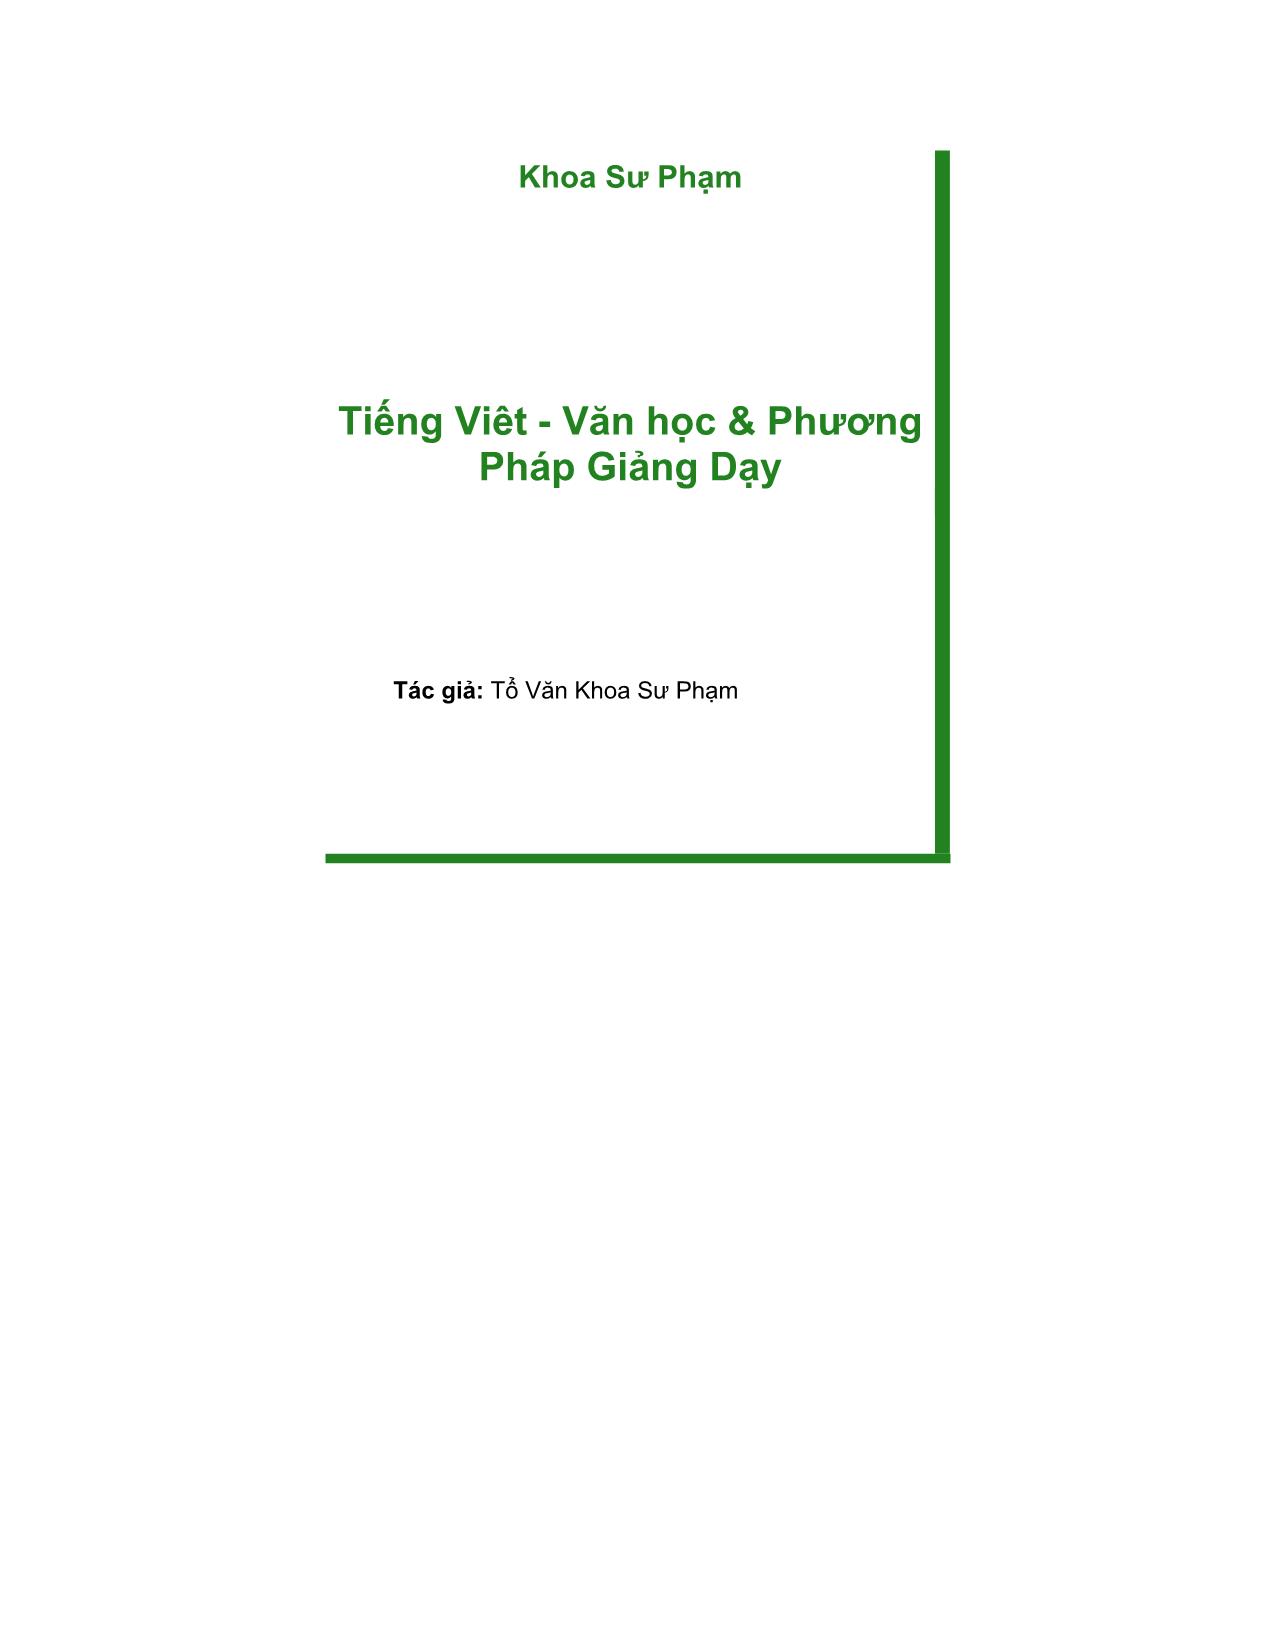 Tiếng Việt - Văn học và phương pháp giảng dạy (Phần 1) trang 1